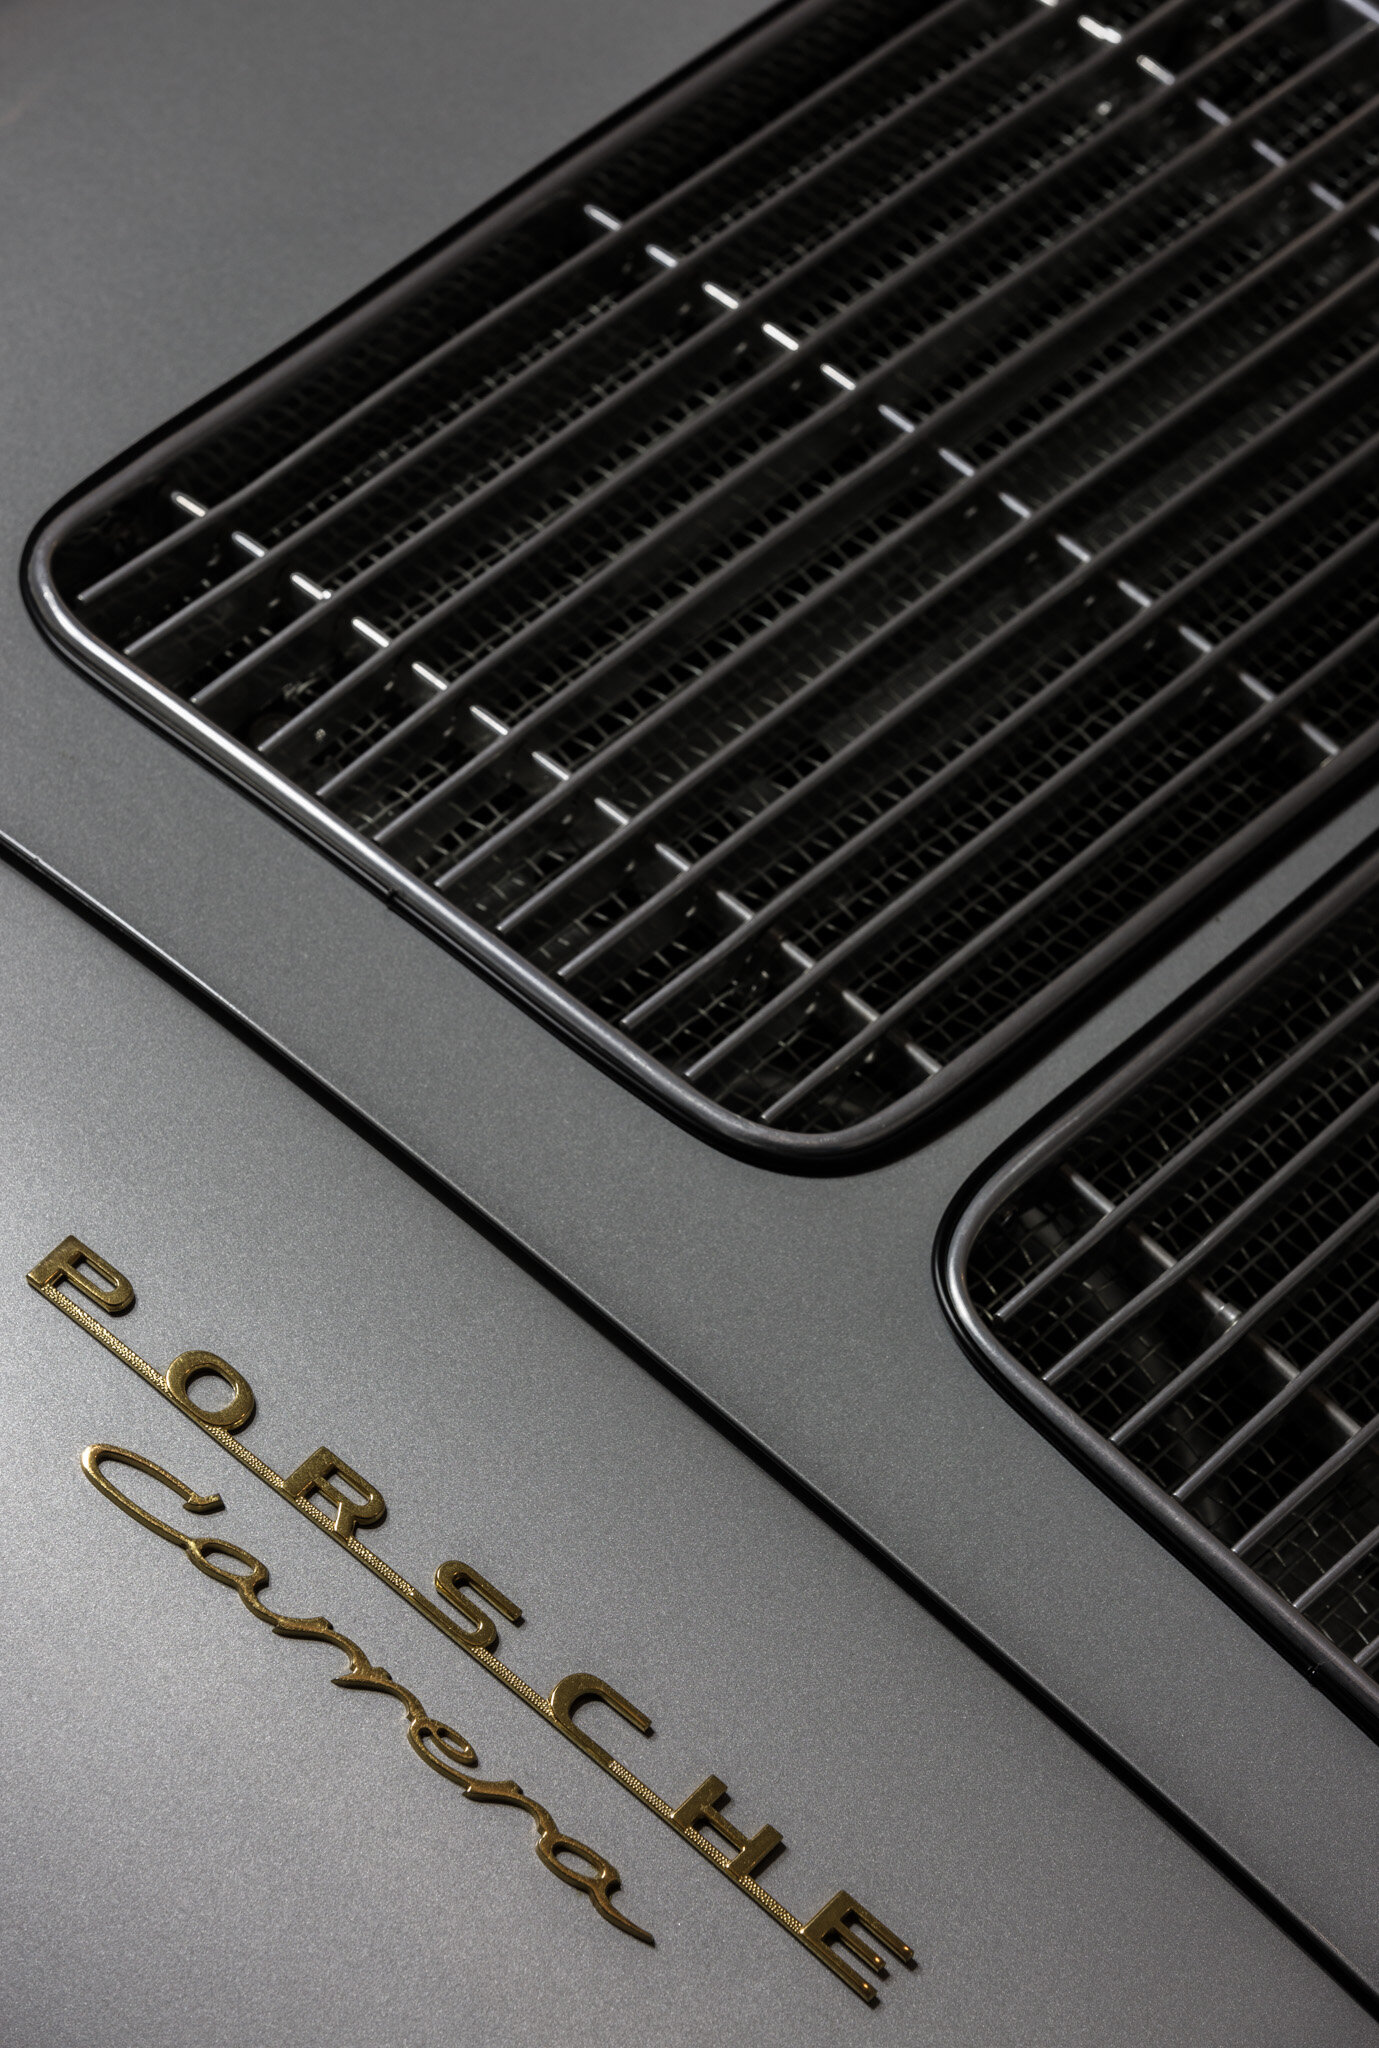 Porsche Carrera grill.jpg